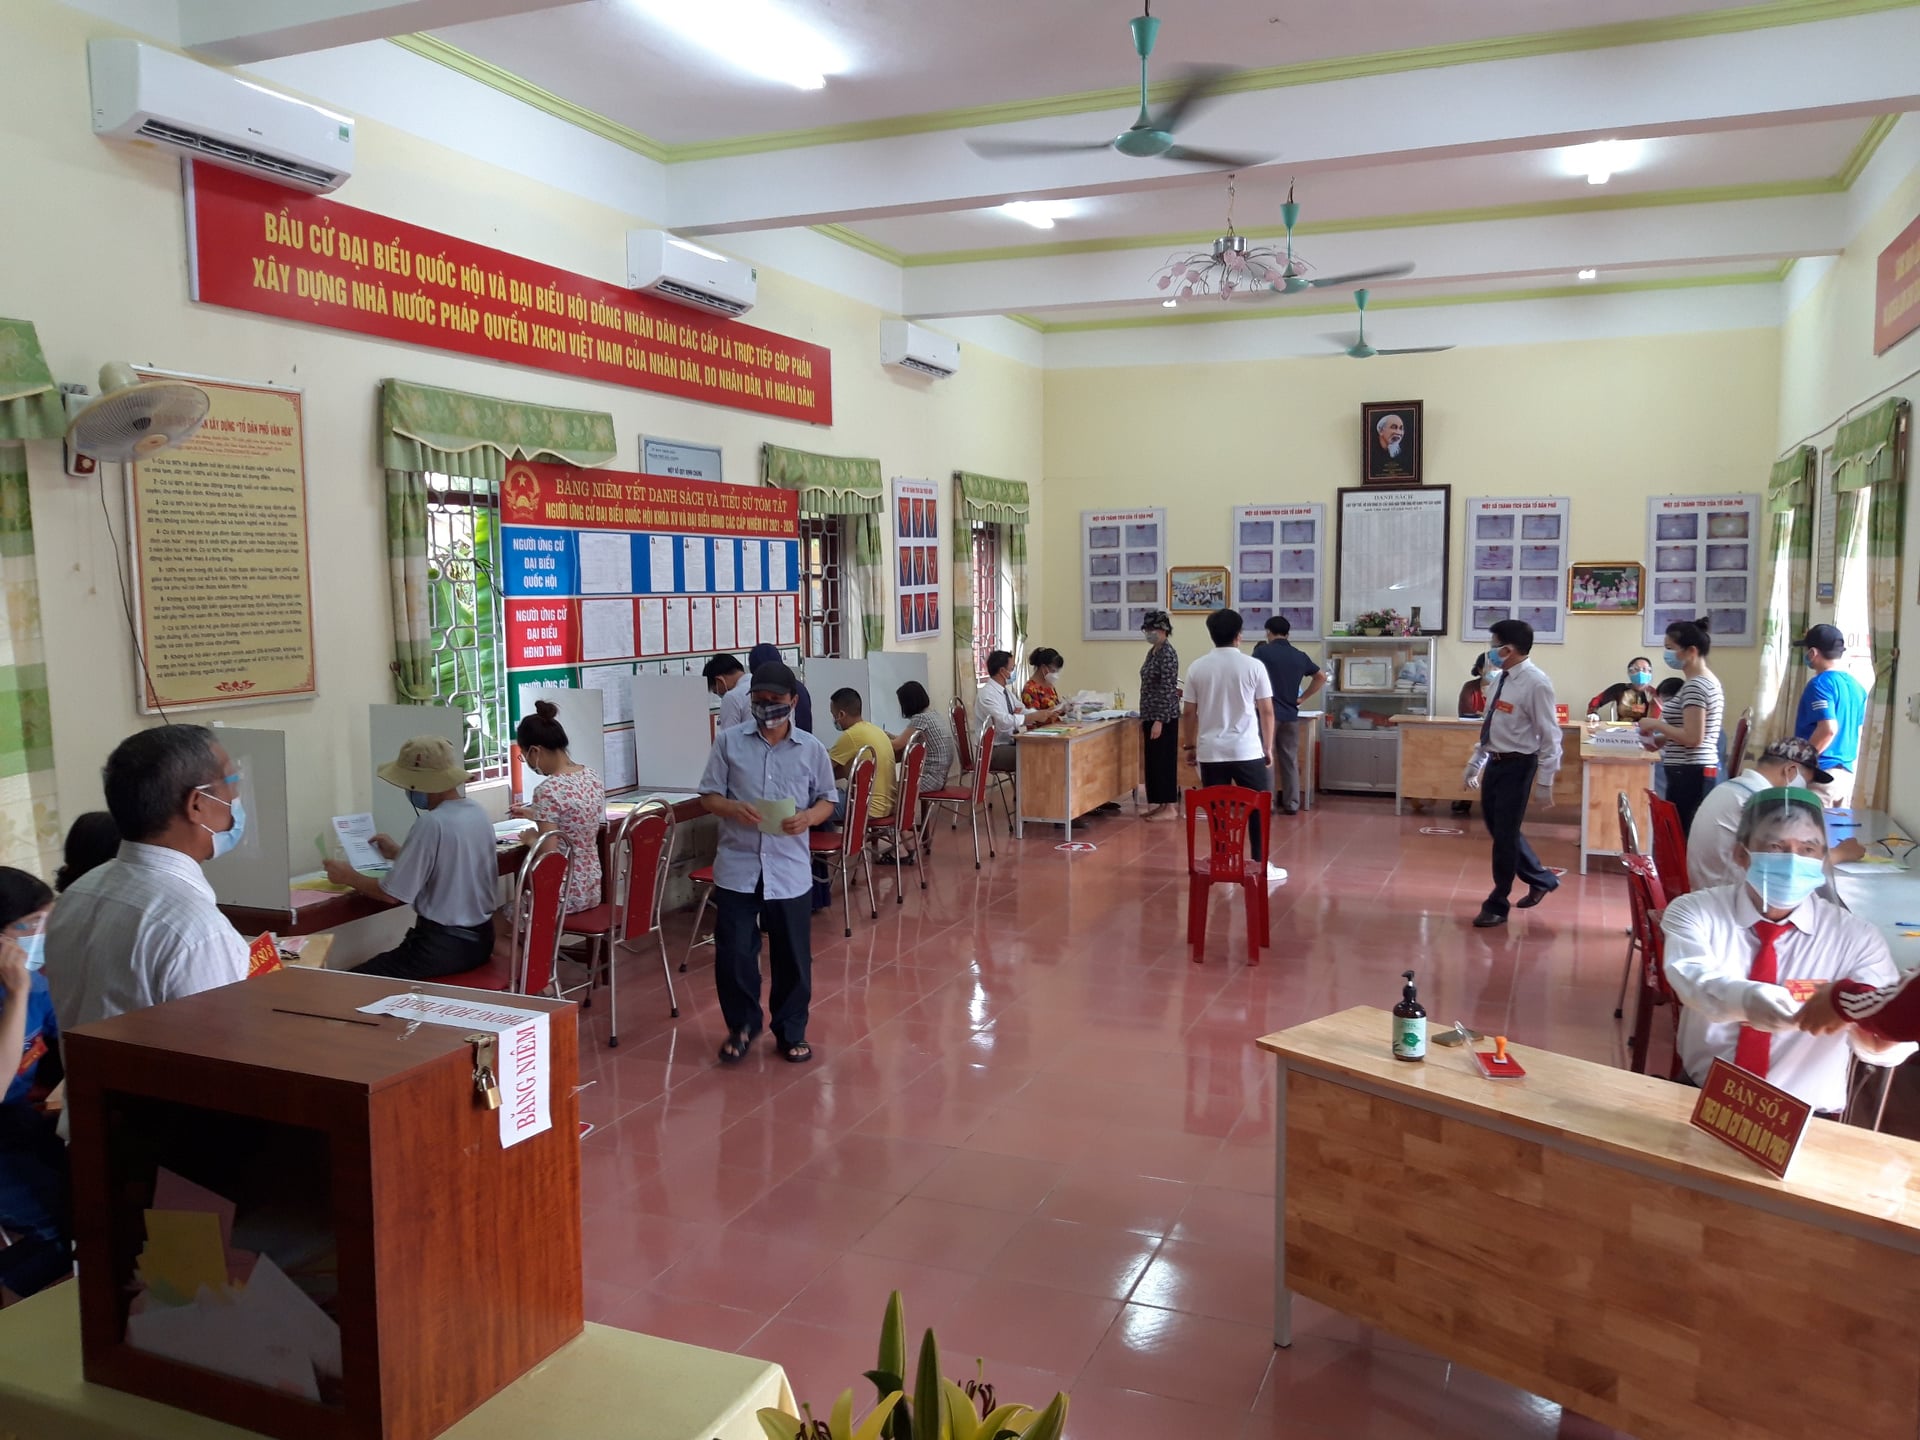 Bầu cử tại tâm dịch Bắc Giang: Hòm phiếu được chở bằng xe đạp đến từng nhà cử tri  - Ảnh 6.